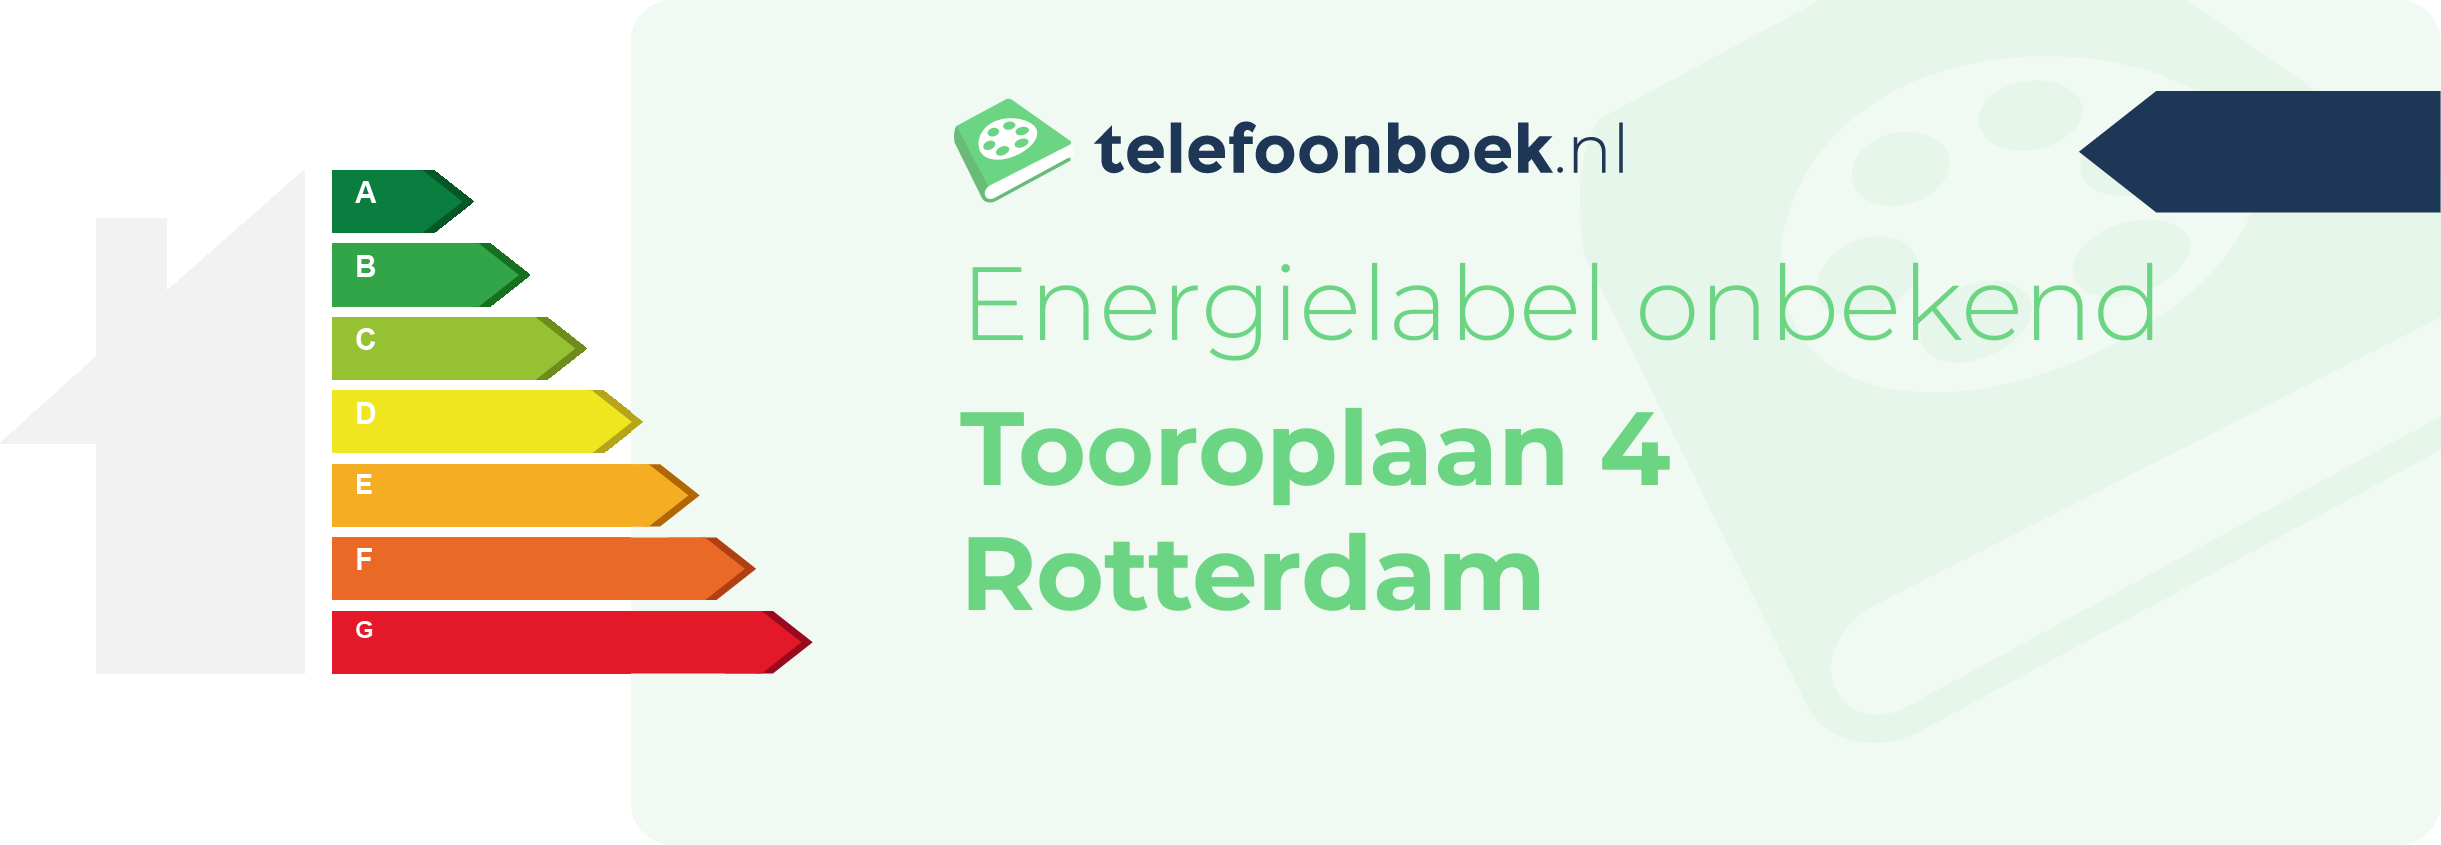 Energielabel Tooroplaan 4 Rotterdam